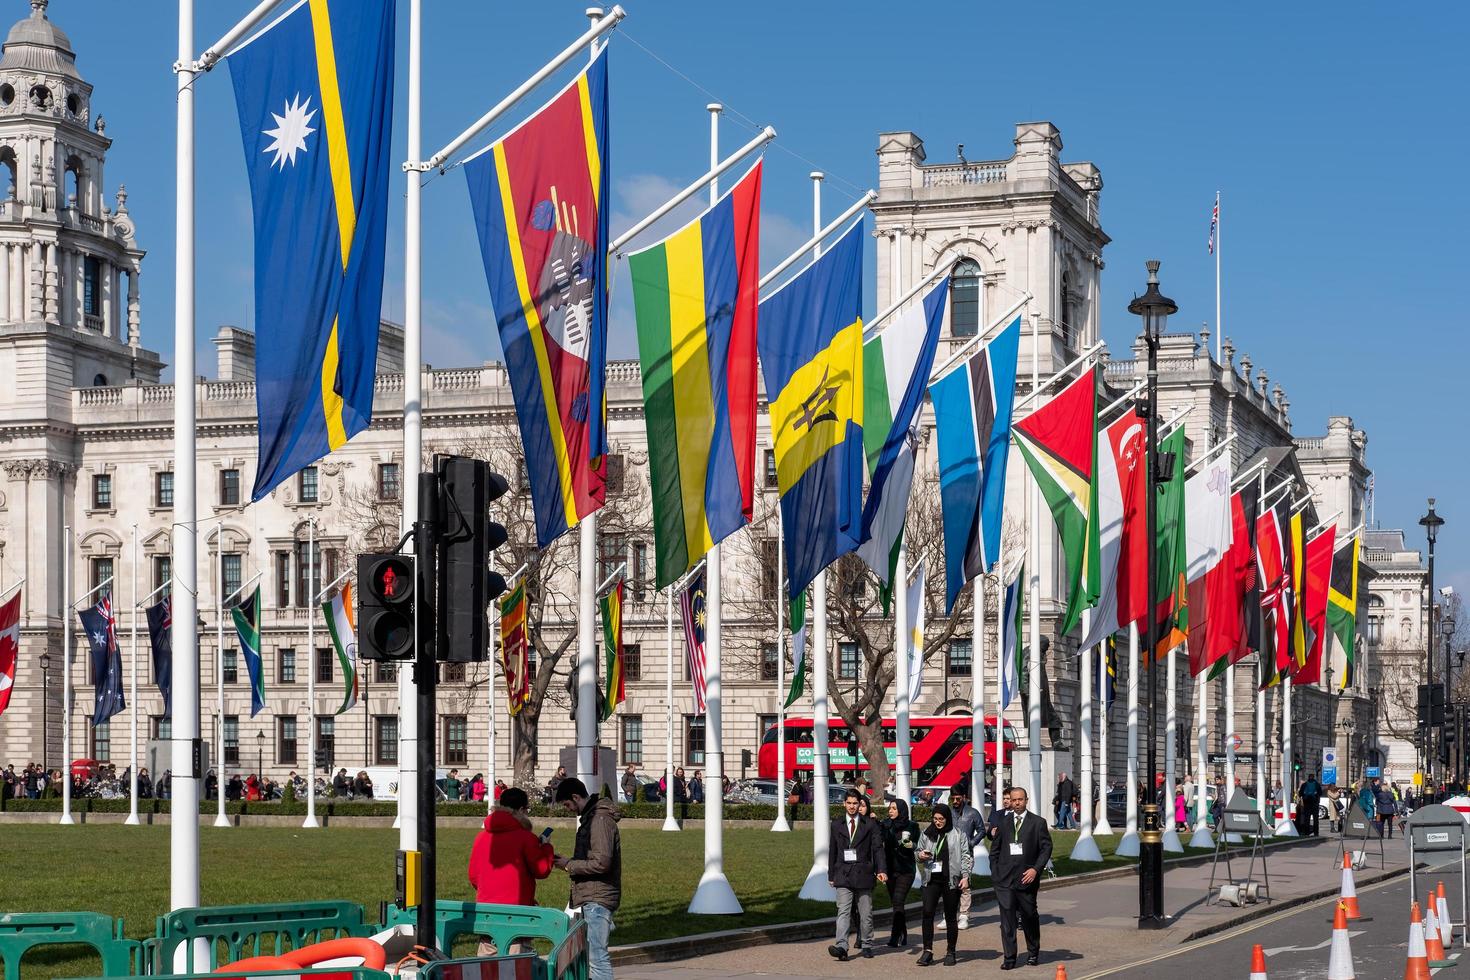 londres, reino unido, 2018. banderas ondeando en la plaza del parlamento en londres el 13 de marzo de 2016. personas no identificadas foto